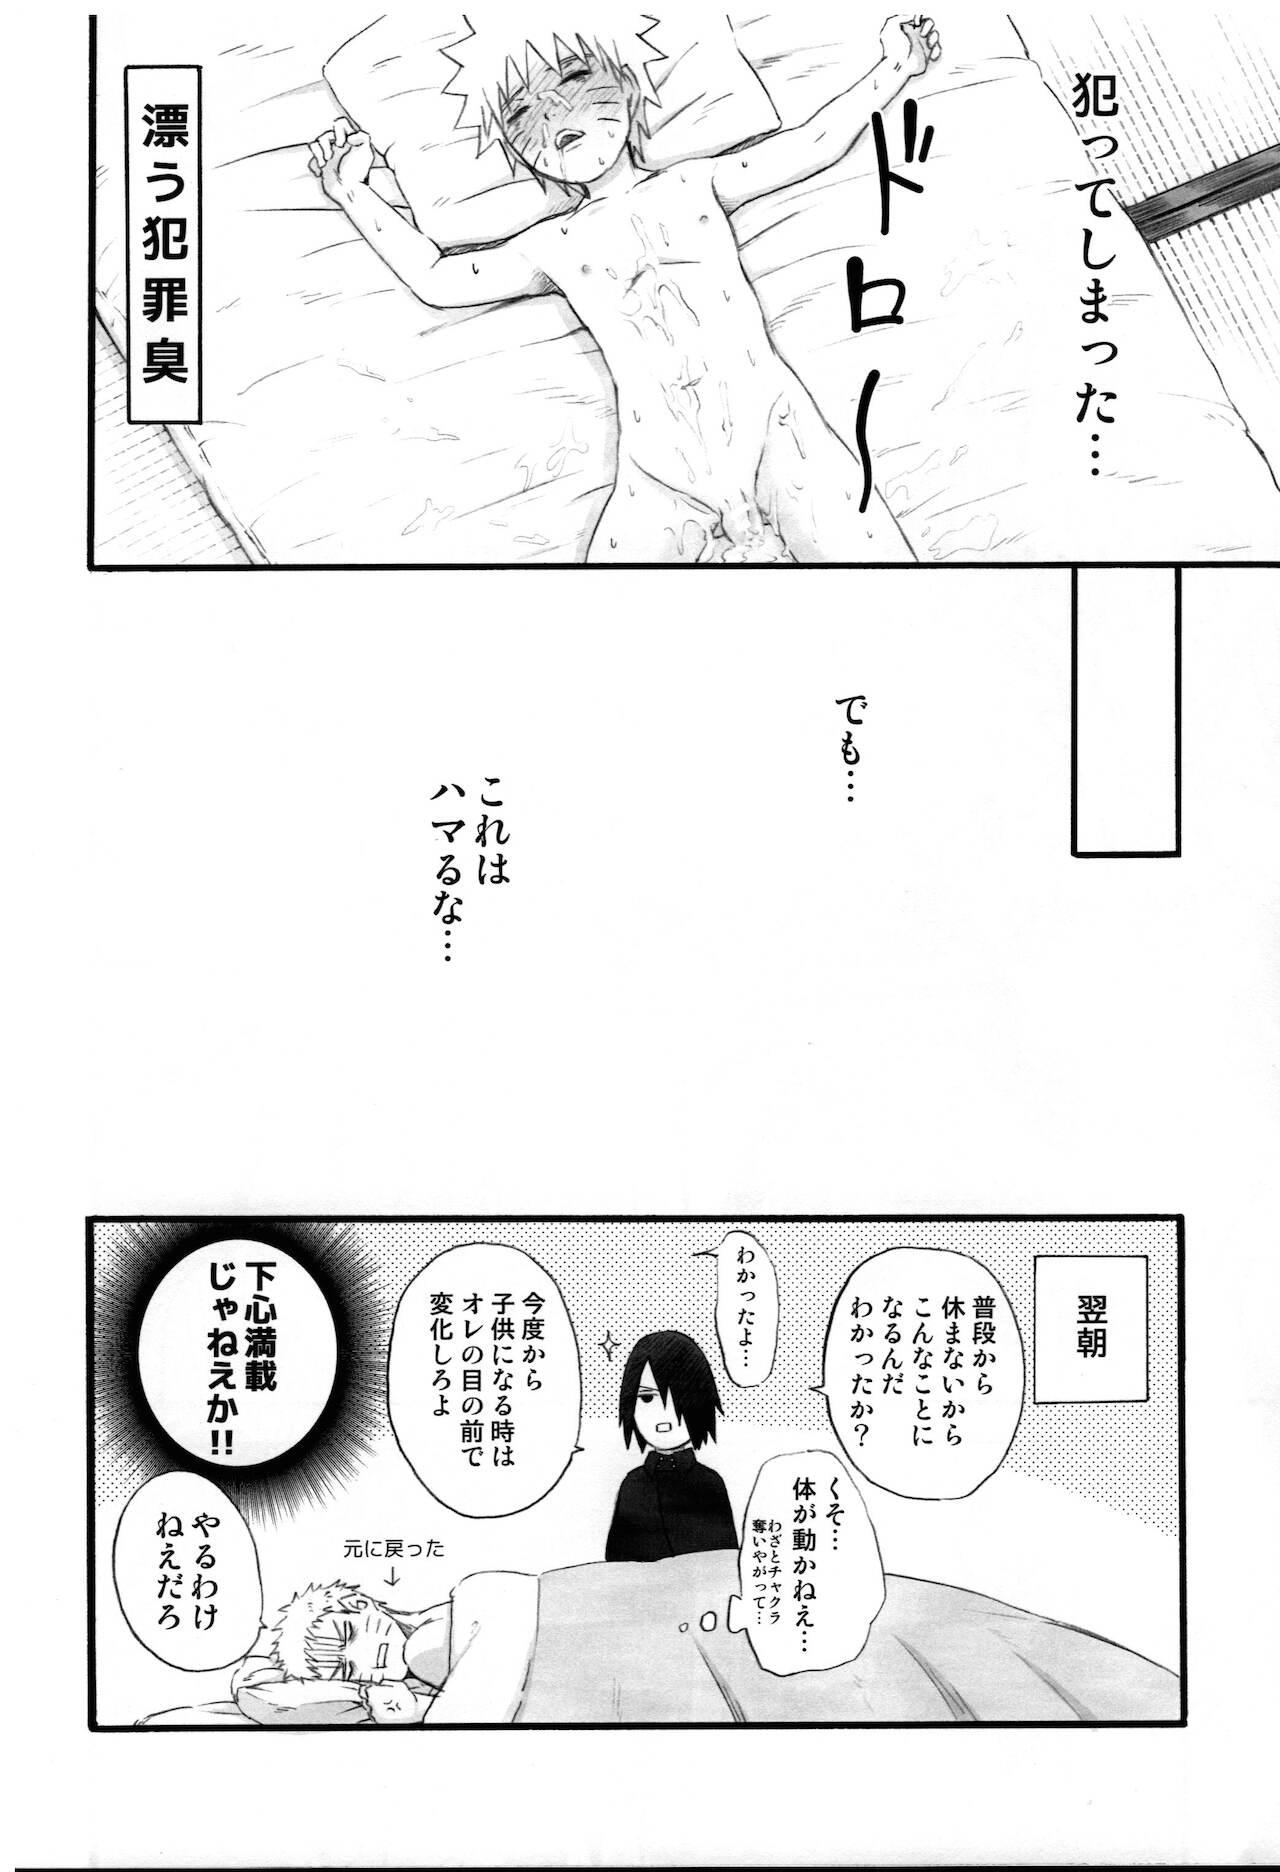 naruto ryōjoku manga 9